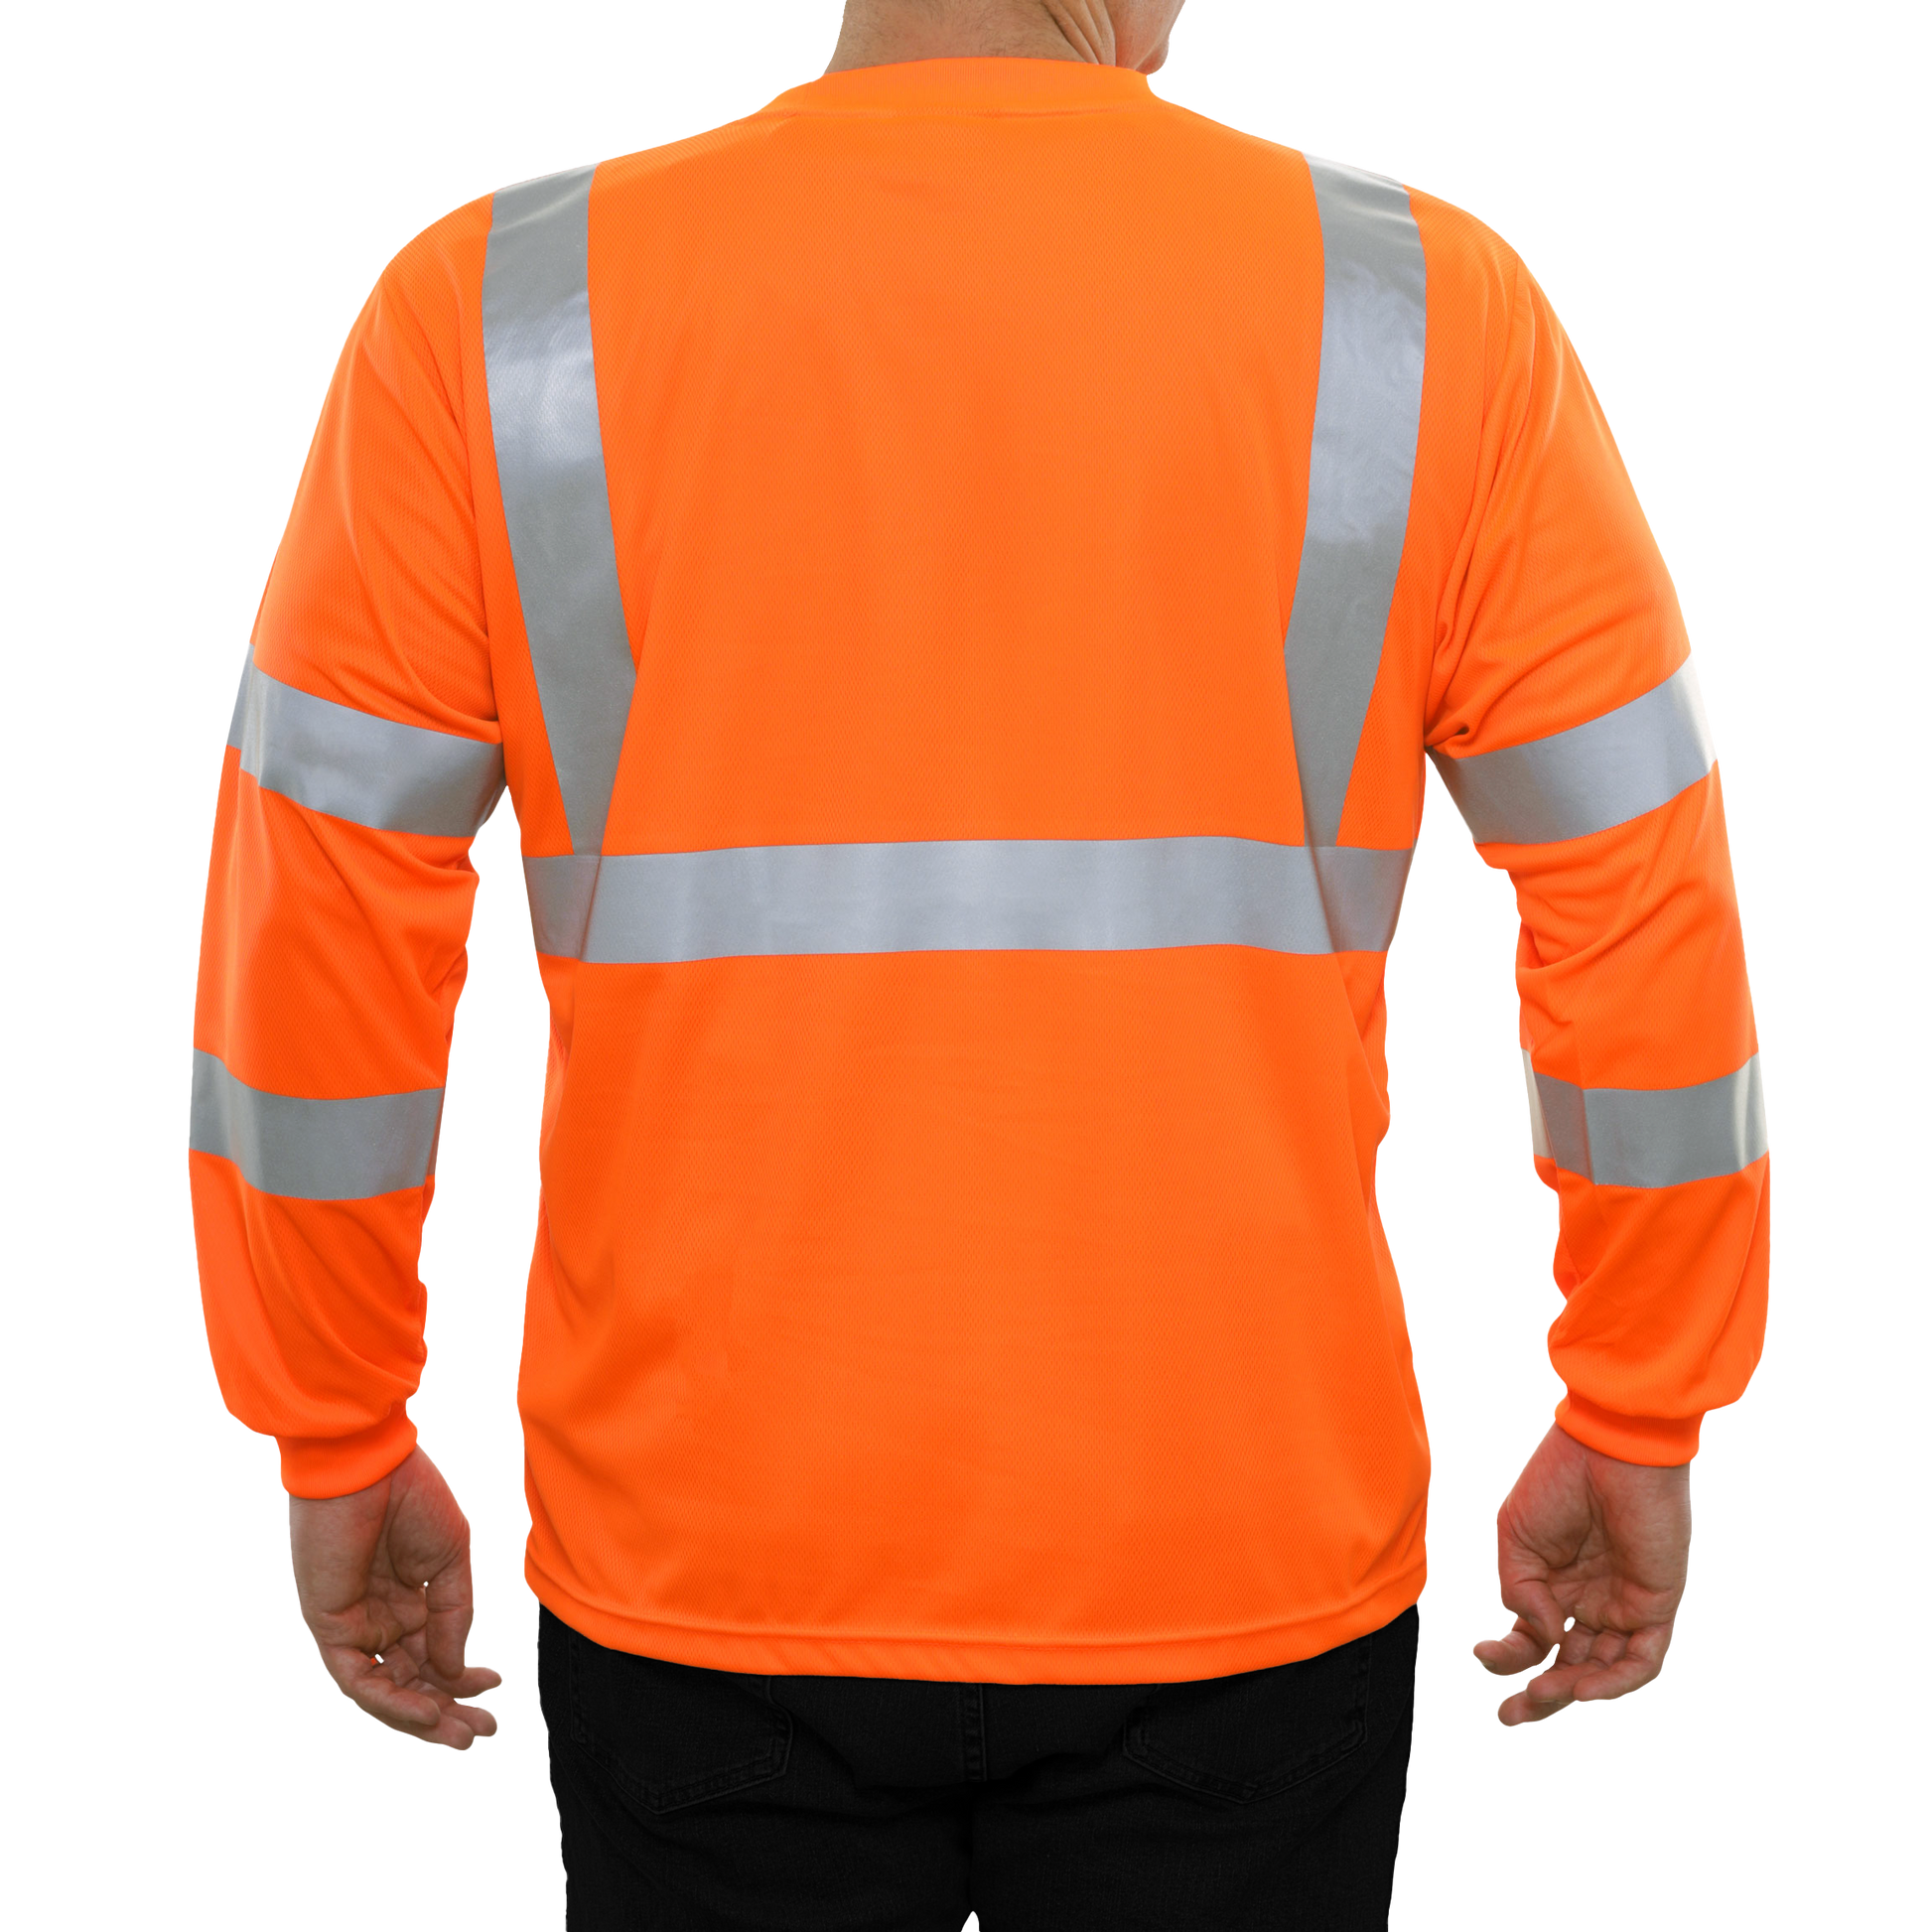 204STOR Hi-Vis Long Sleeve Orange Birdseye Pocket Safety T-Shirt